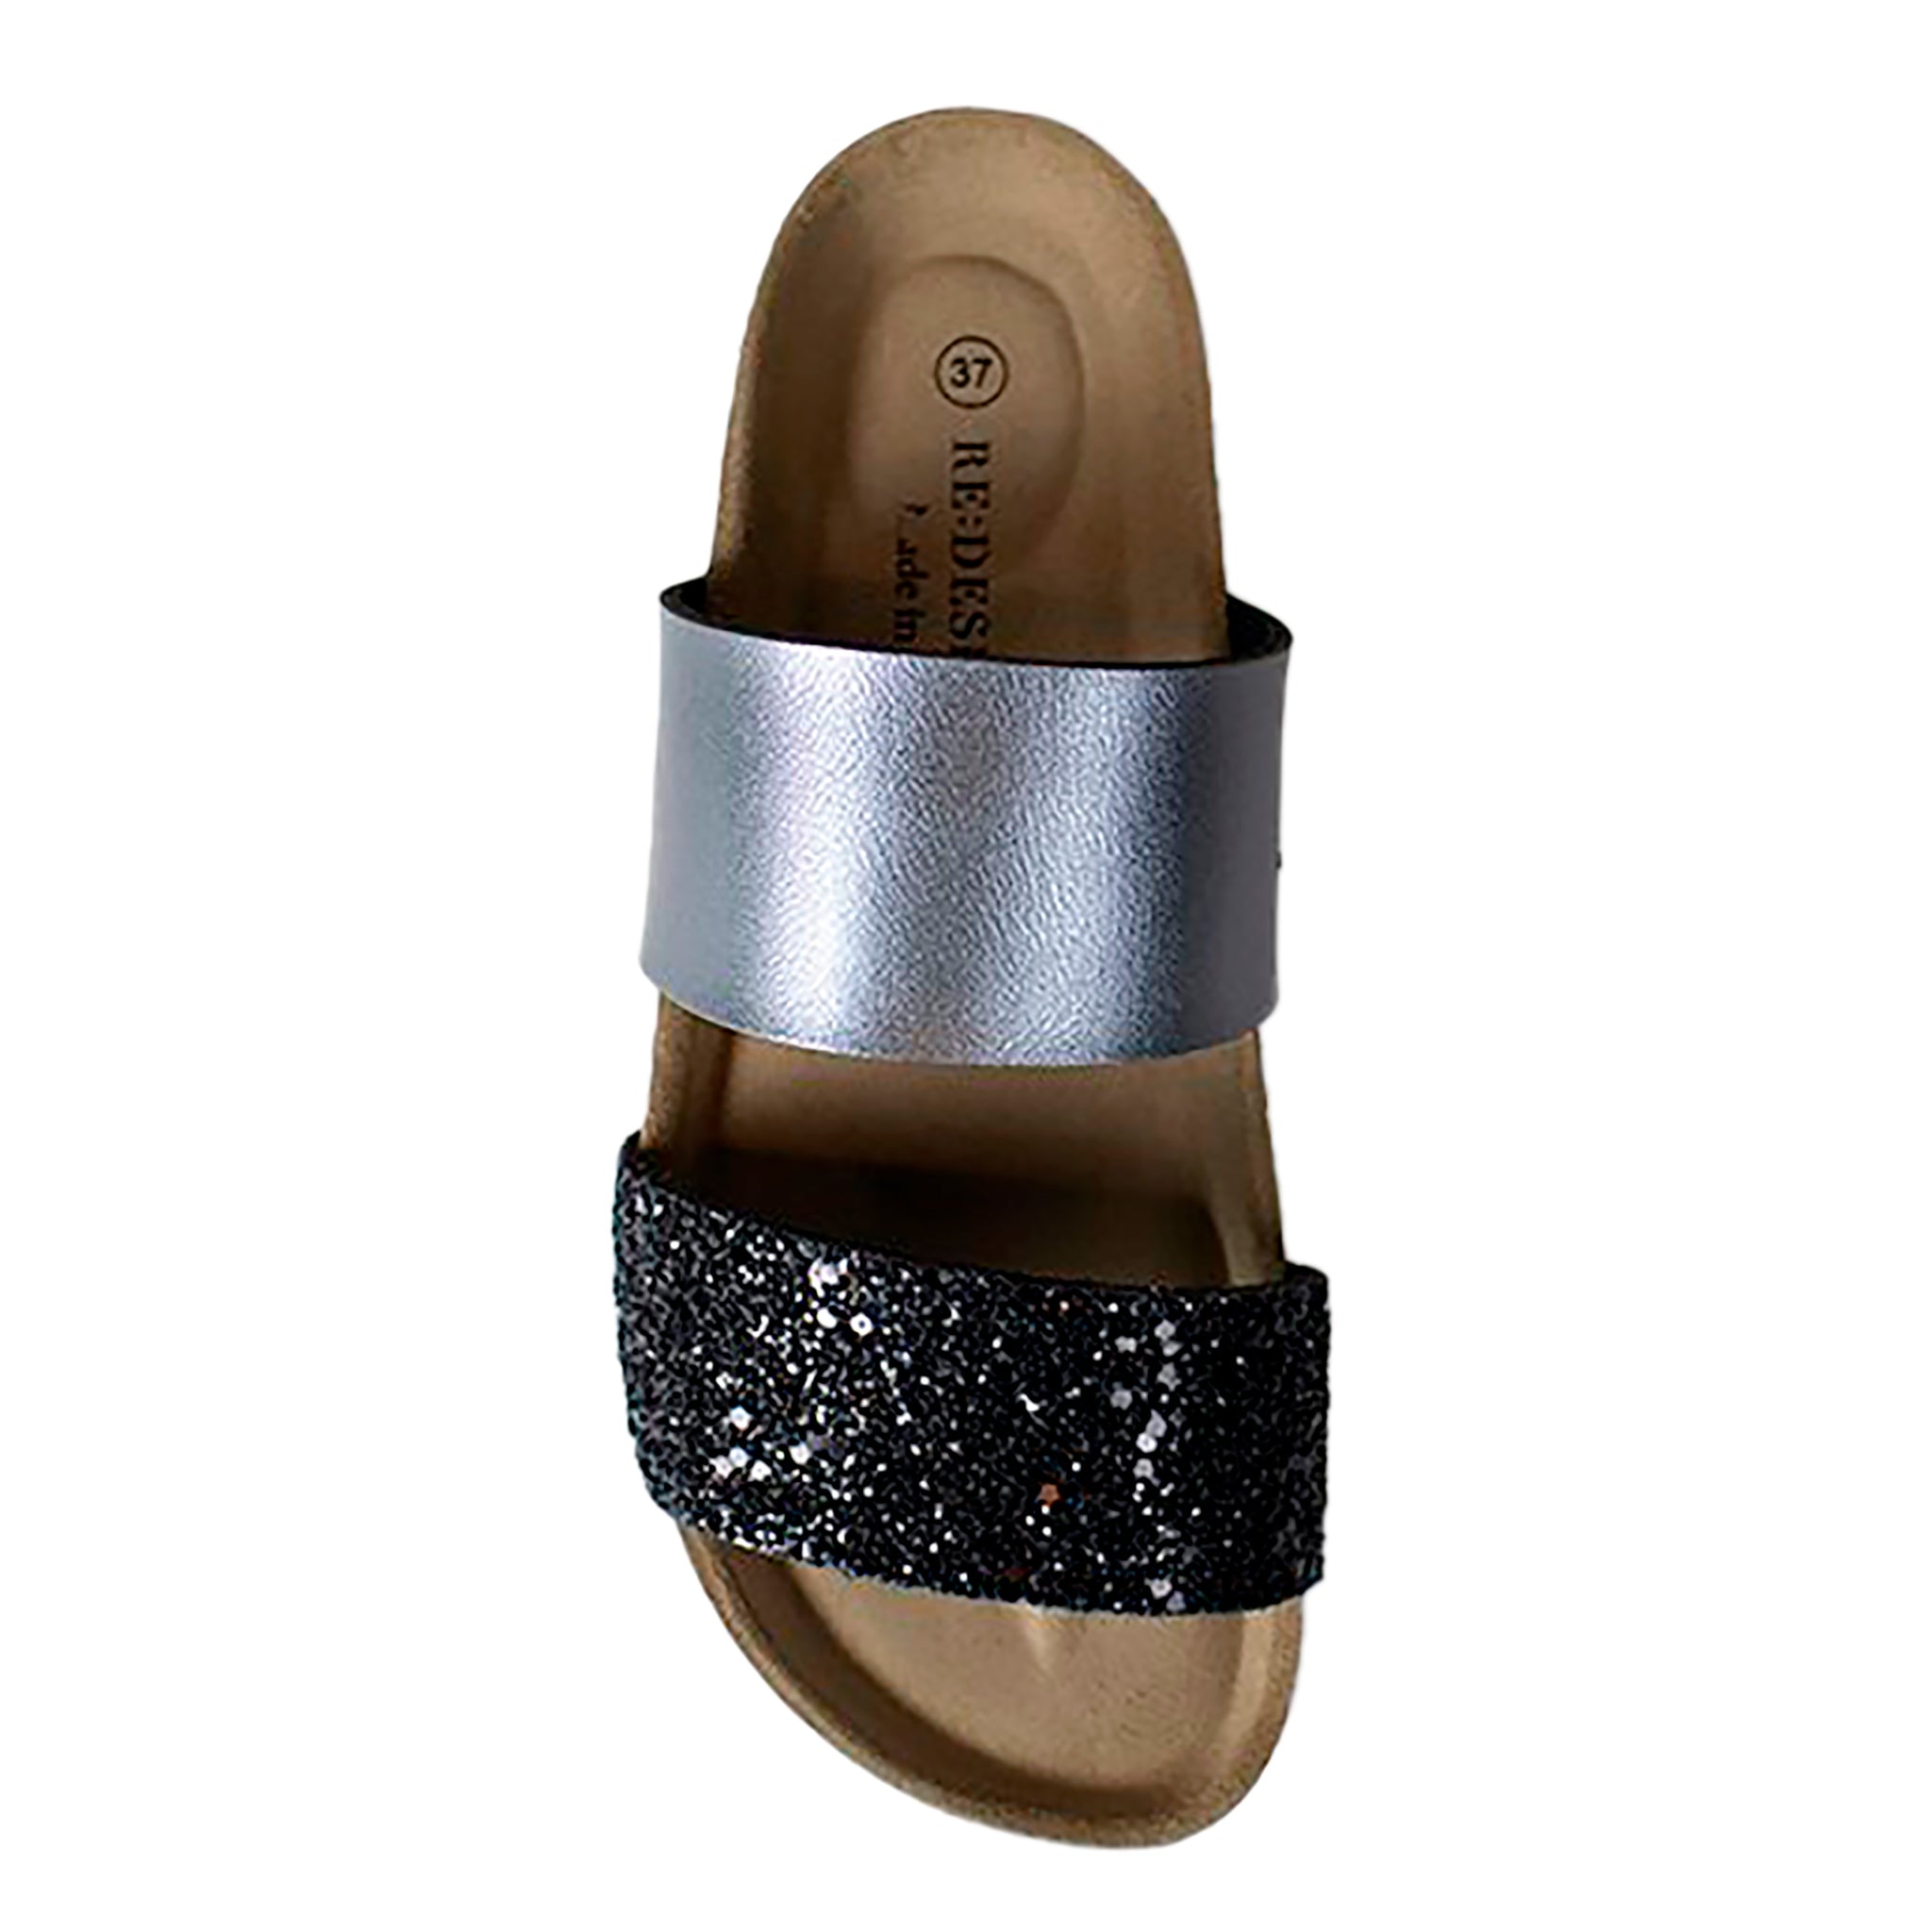 Re:Designin sandaalit, joissa kaksi leveää vyötettä päällä, kimalteleva musta ja kiiltävä hopeanharmaa. Yläkuva.